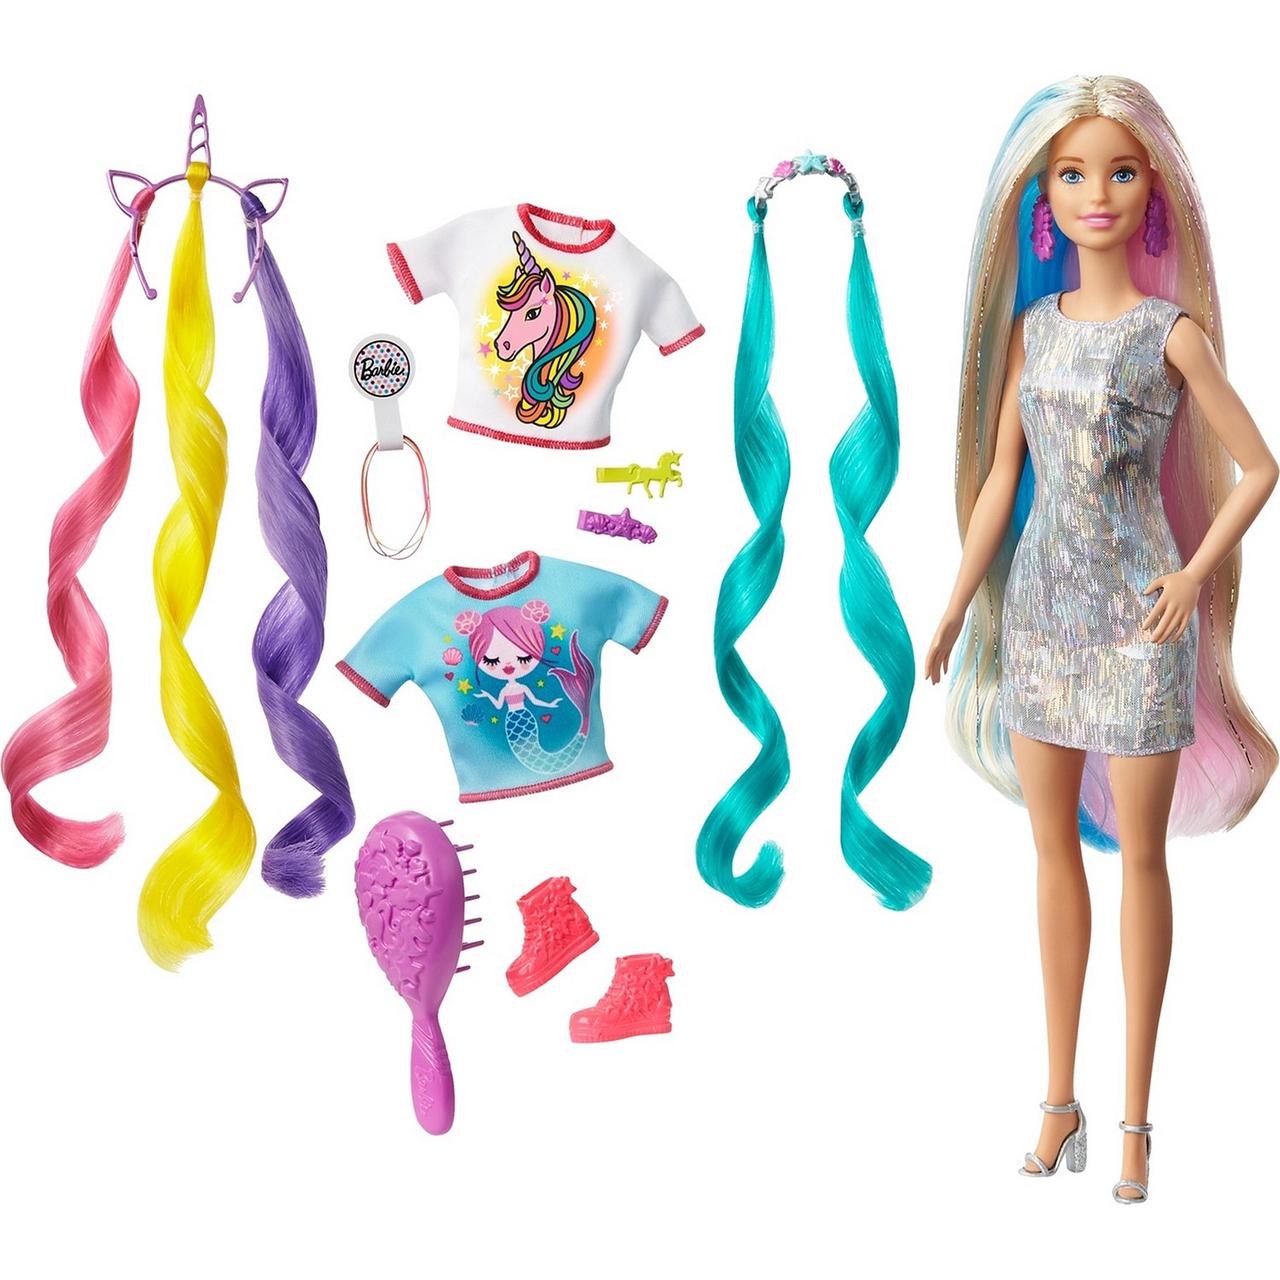 Barbie Набор "Волшебные волосы Барби" из Единорога в Русалку